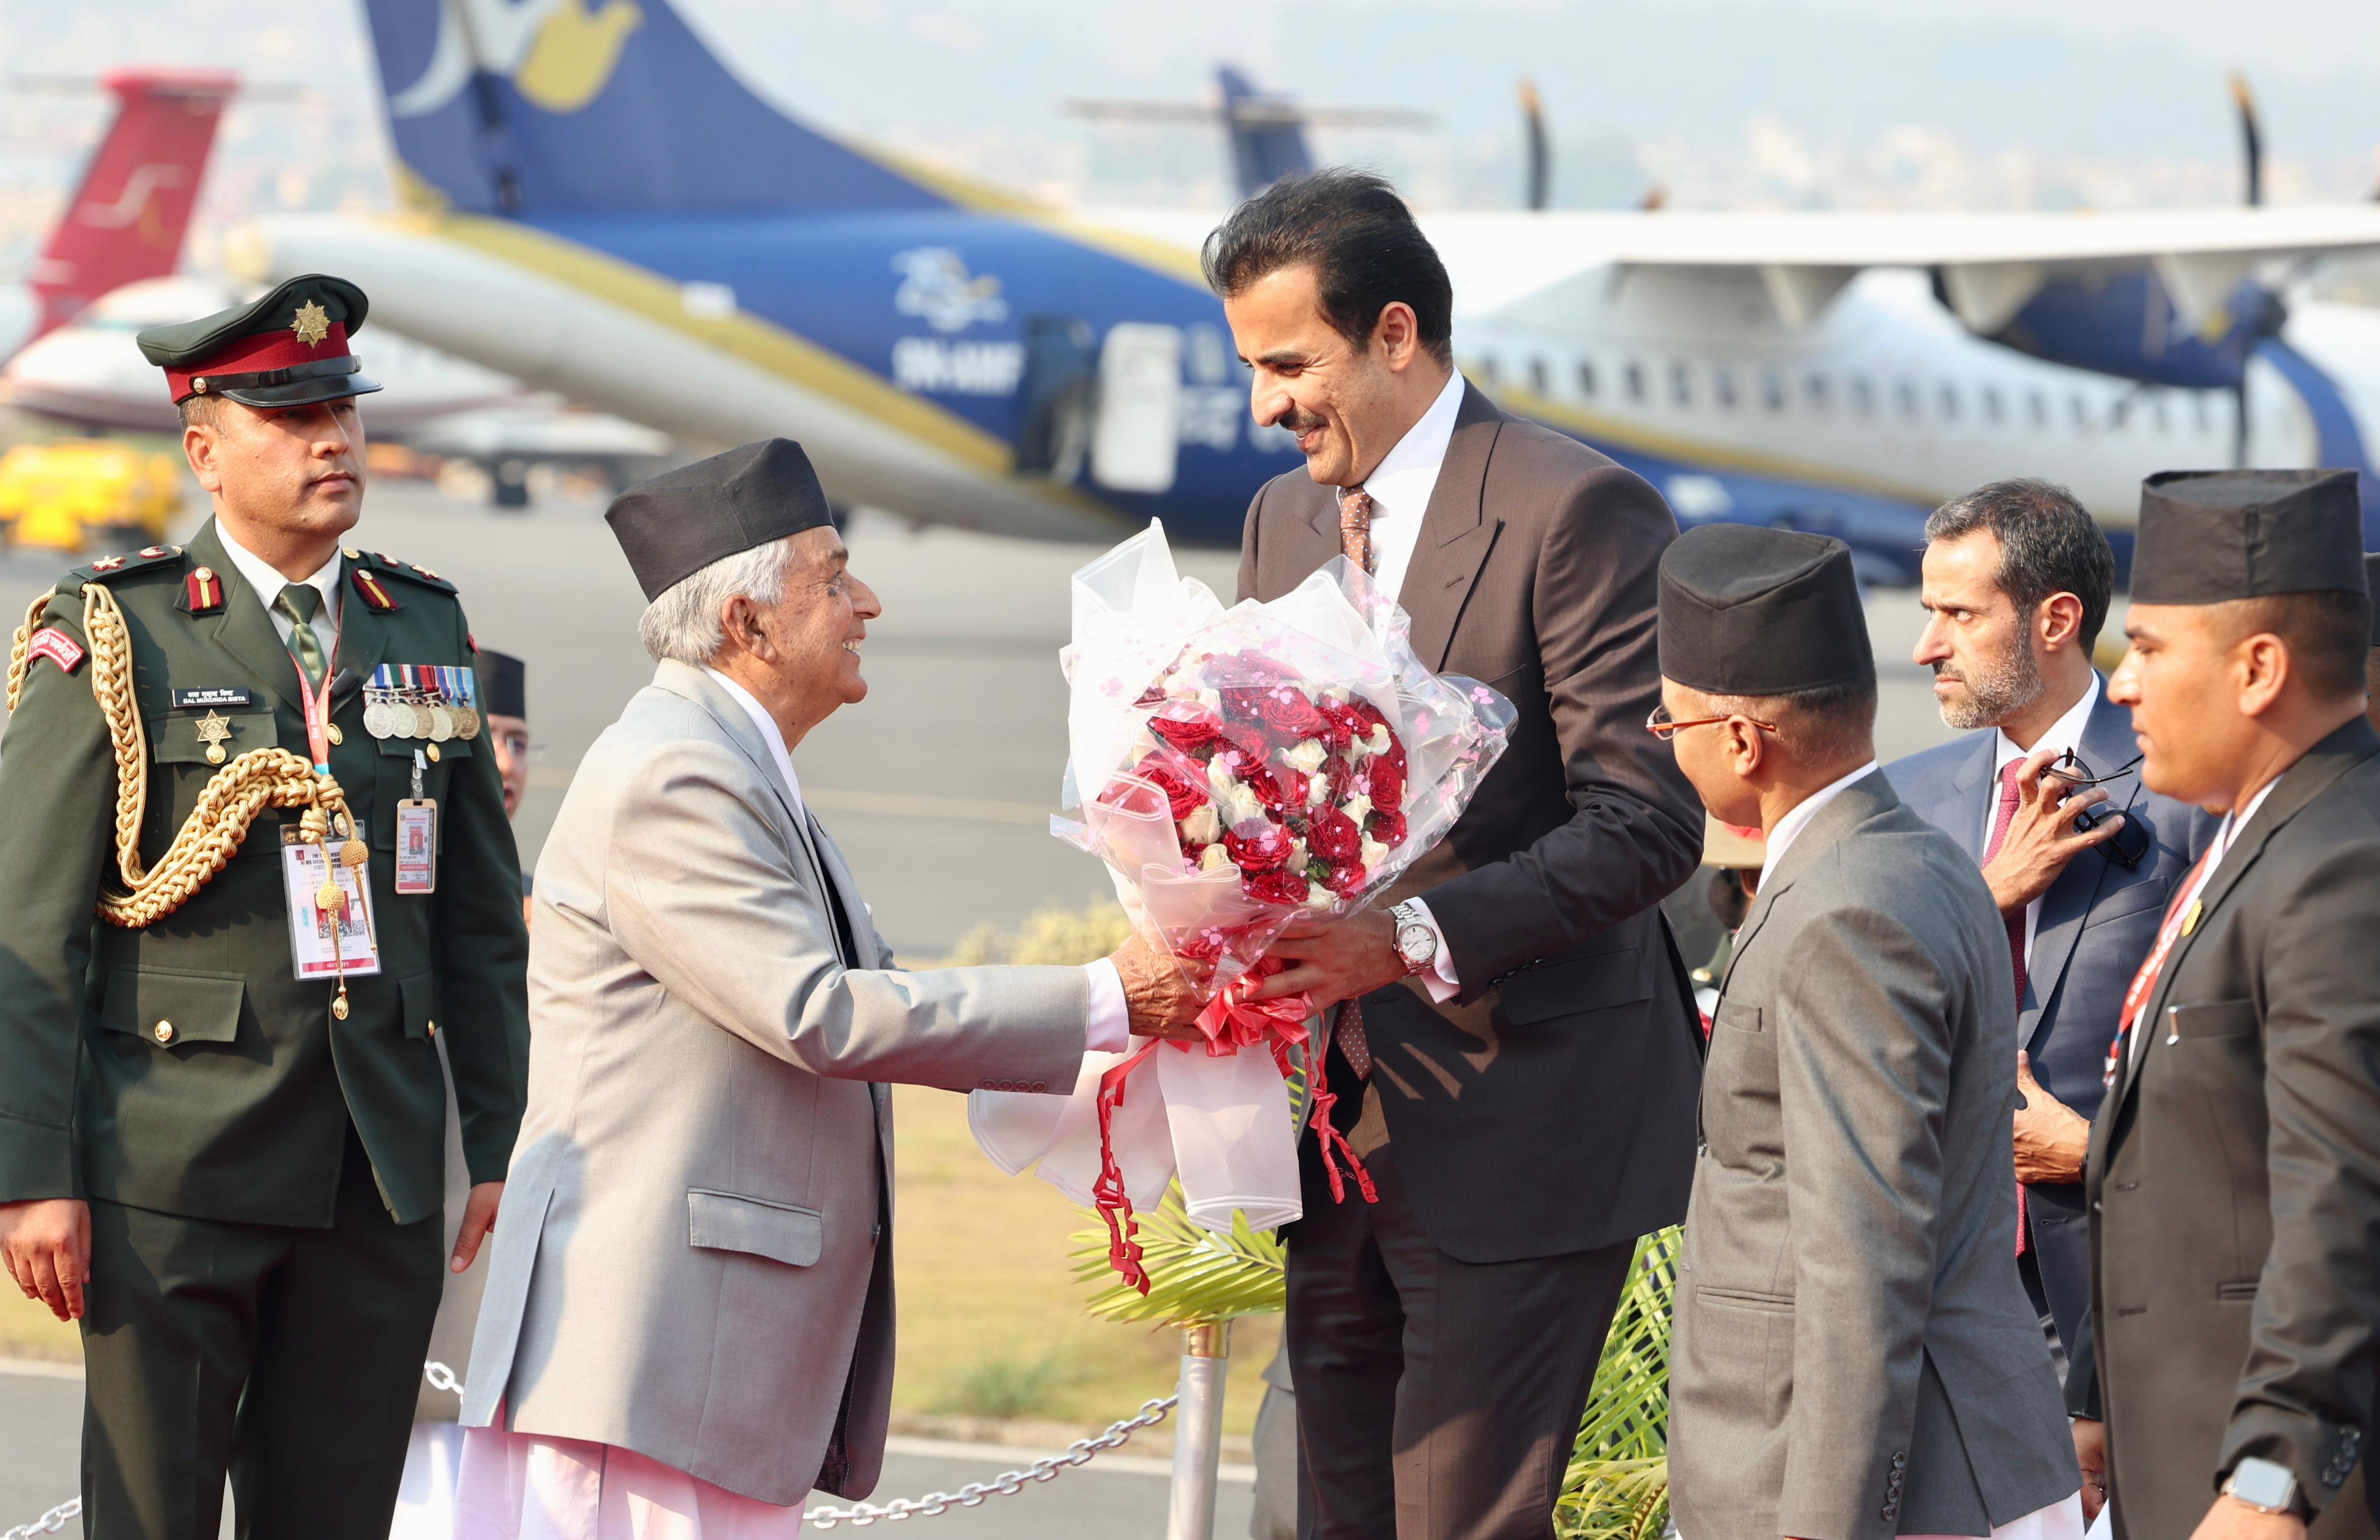 कतारका राजा काठमाडौंमा, एयरपोर्टमै पुगेर राष्ट्रपतिले गरे स्वागत